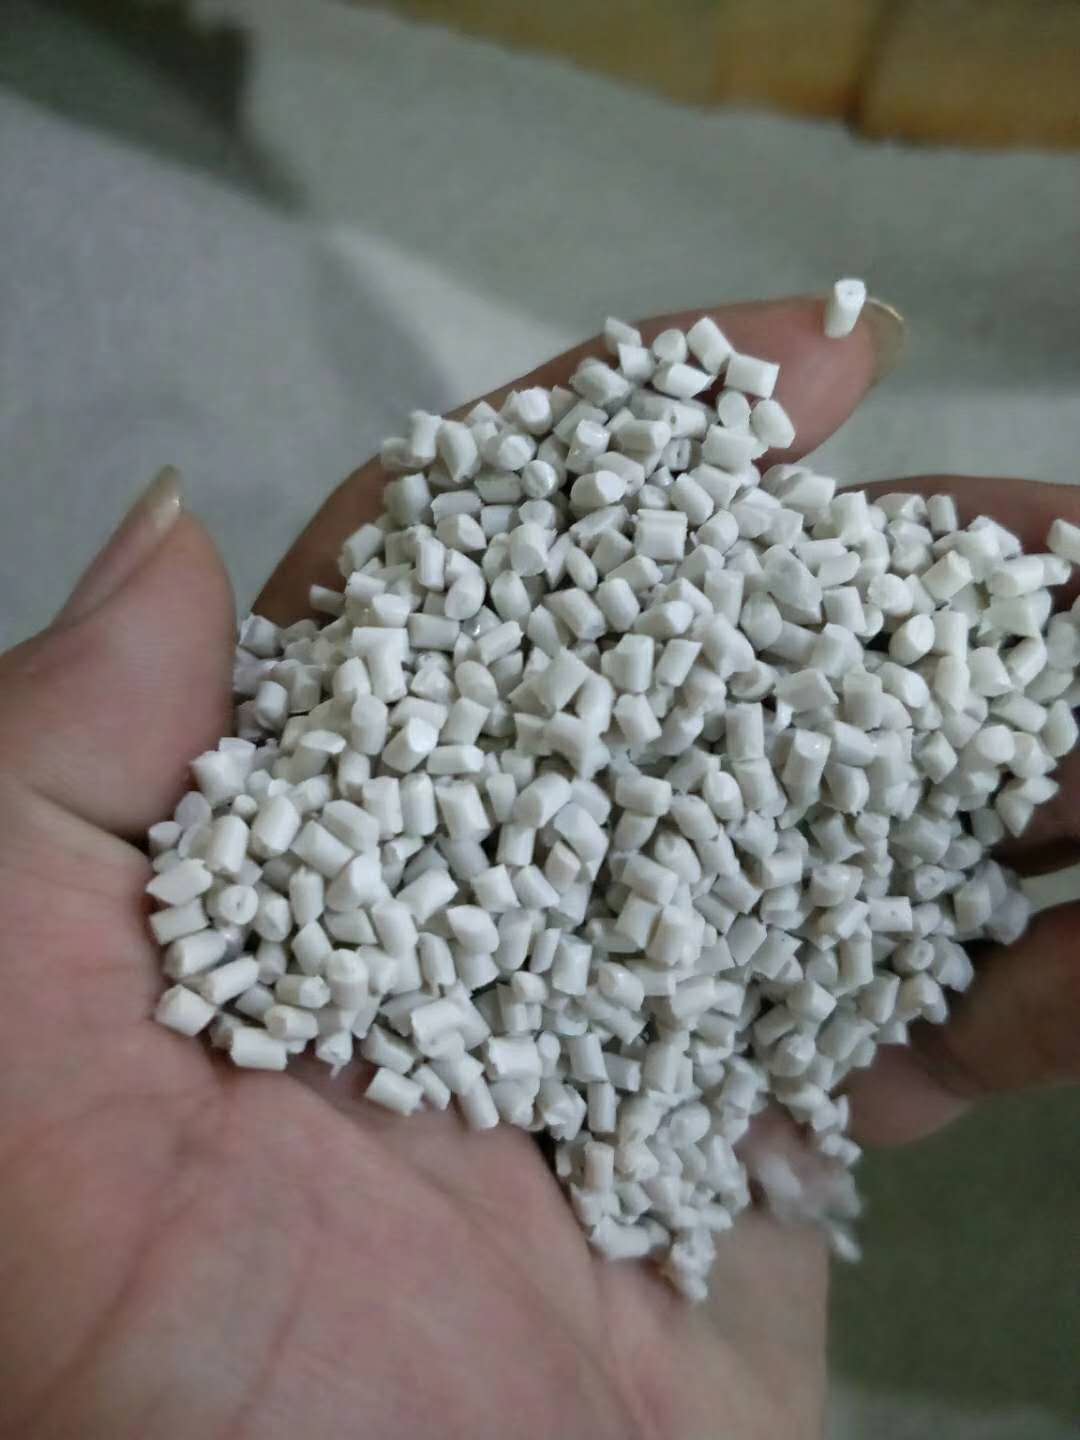 厦门进口中国台湾塑料颗粒遇到突发状况所需的措施